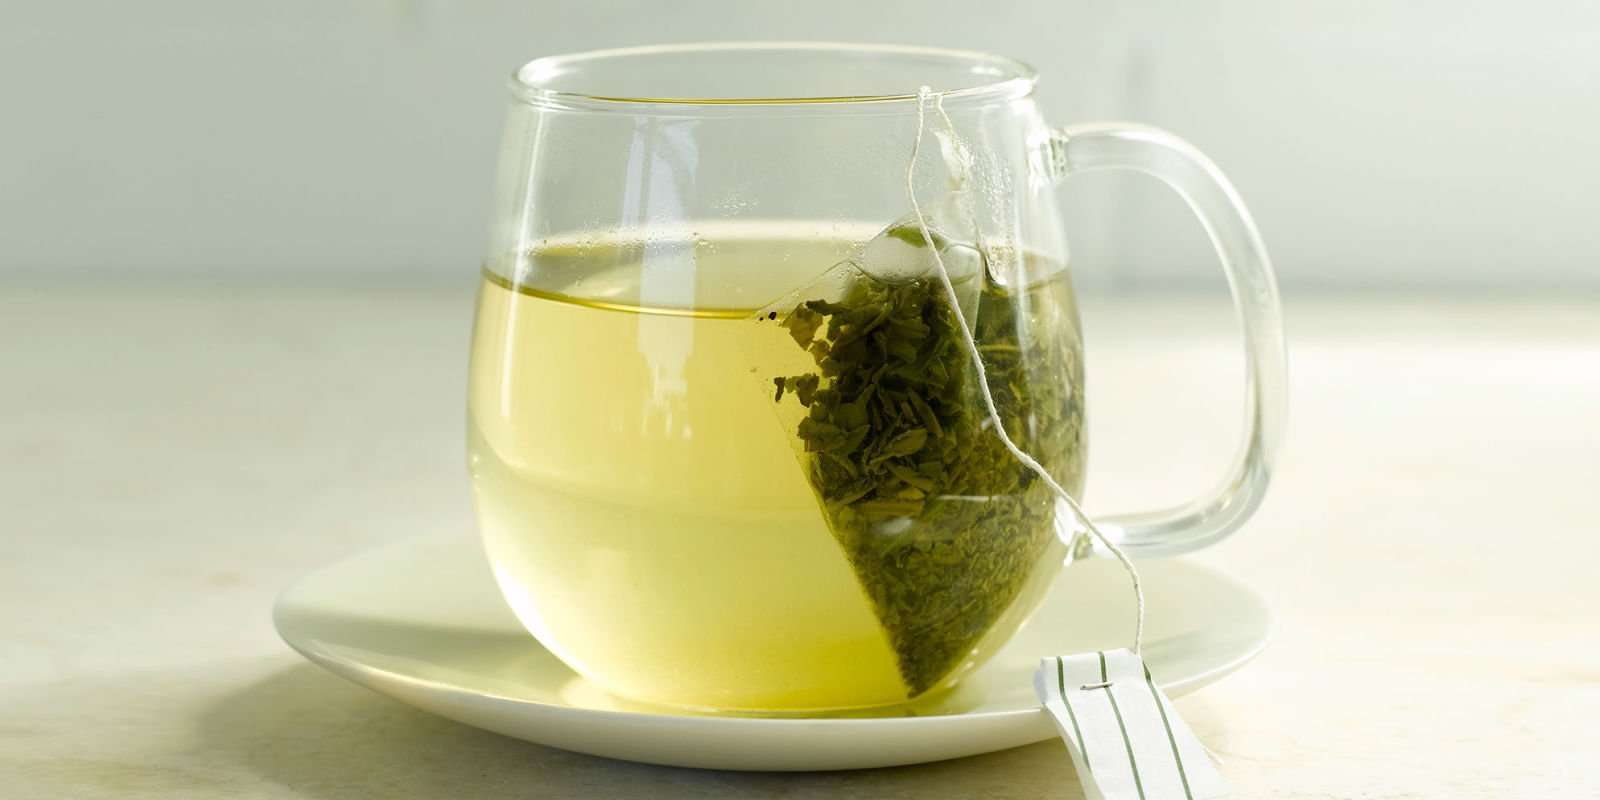 11 Best Green Tea Brands to Drink in 2018